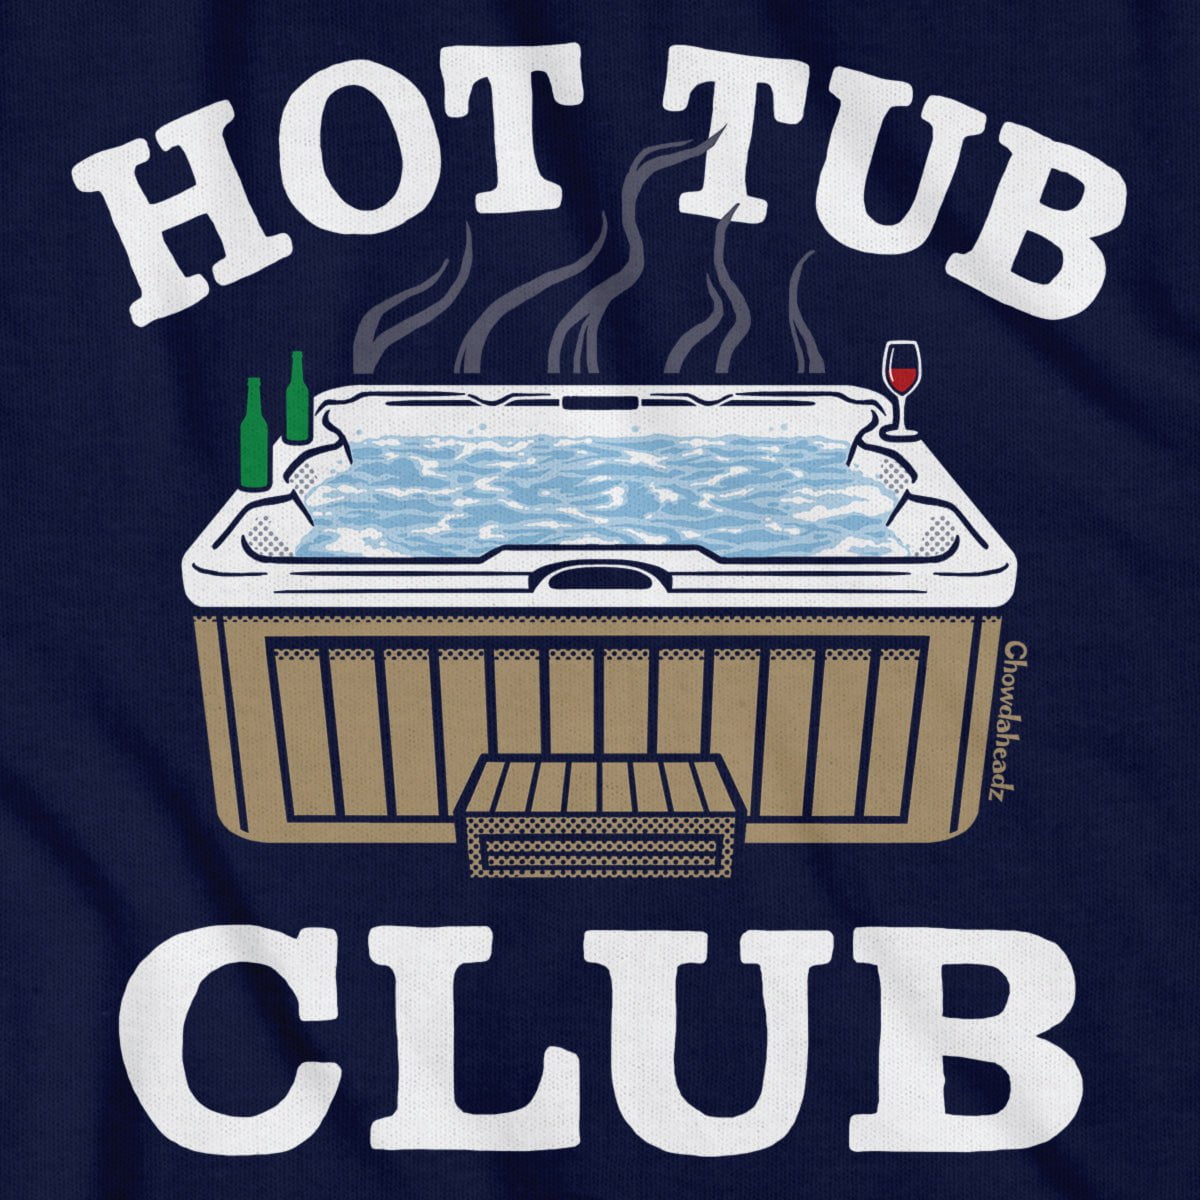 Hot Tub Club T-Shirt - Chowdaheadz